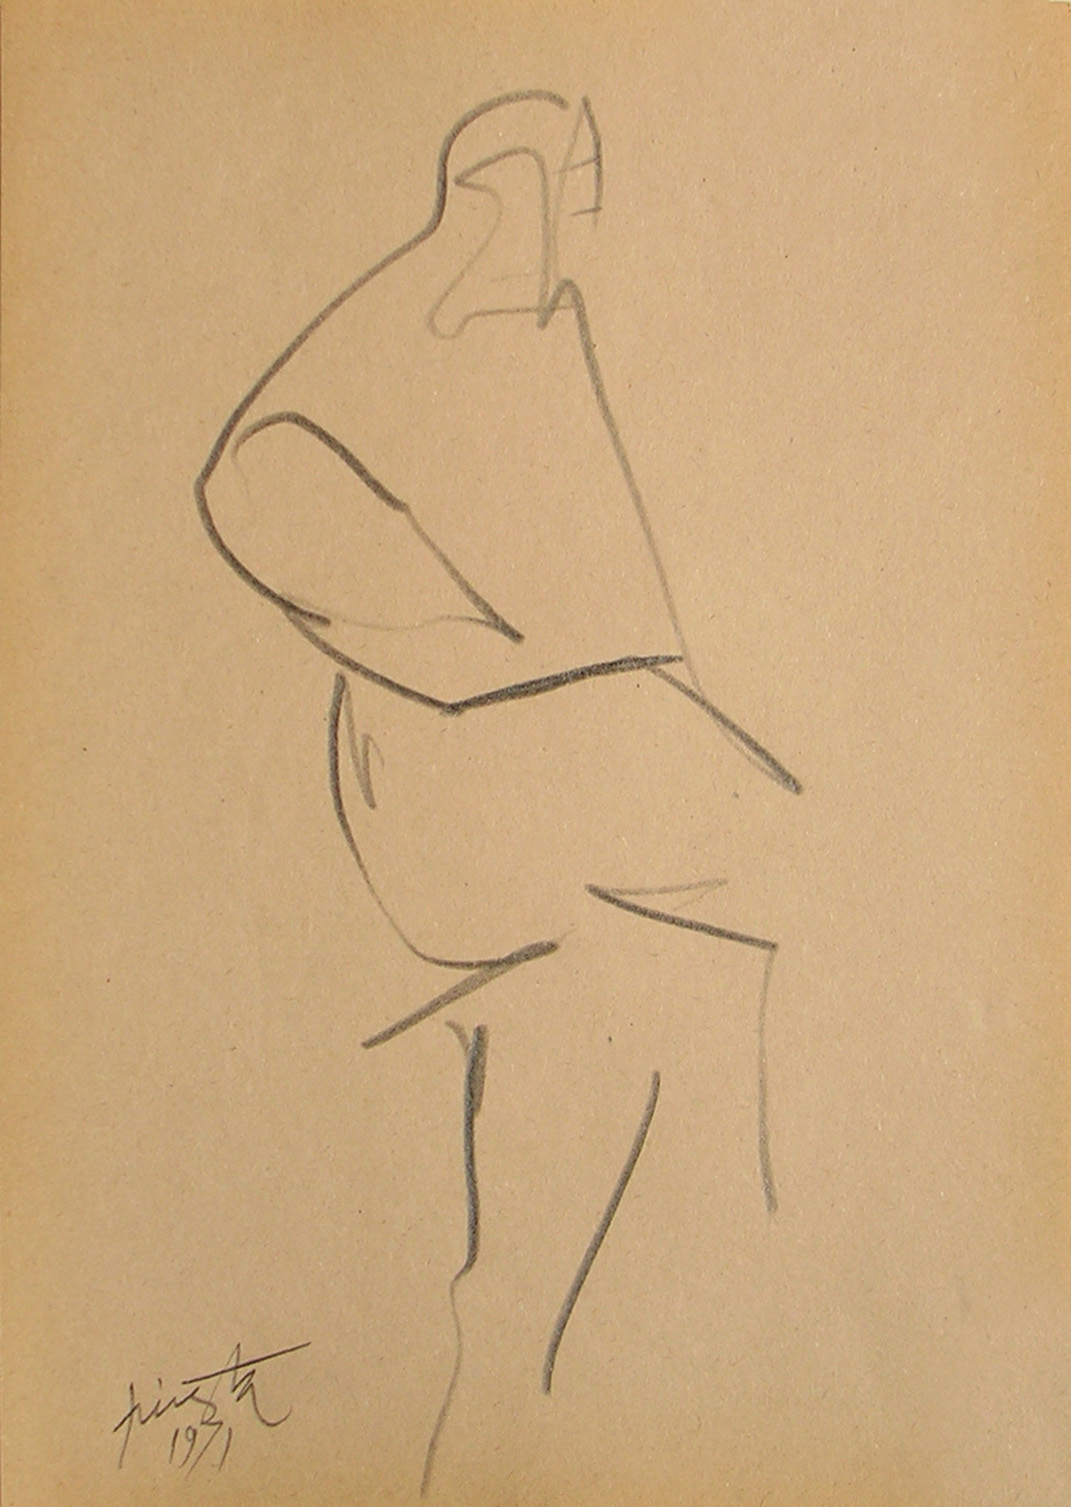 Figura humana, carbonilla sobre papel, 19 cm x 13 cm, 1971